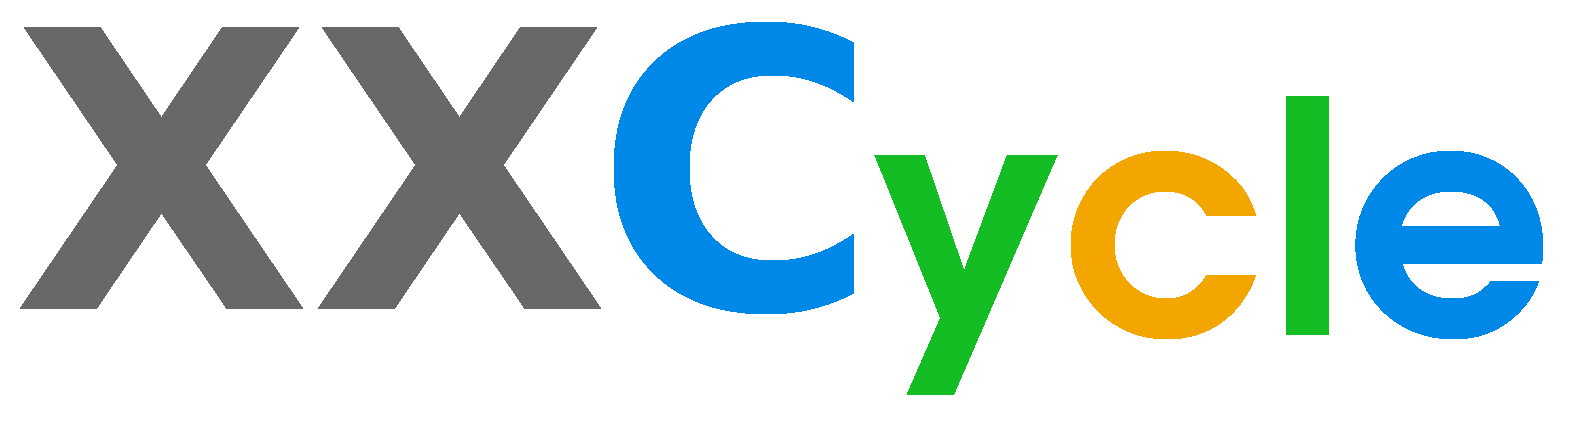 XXCYCLE.COM